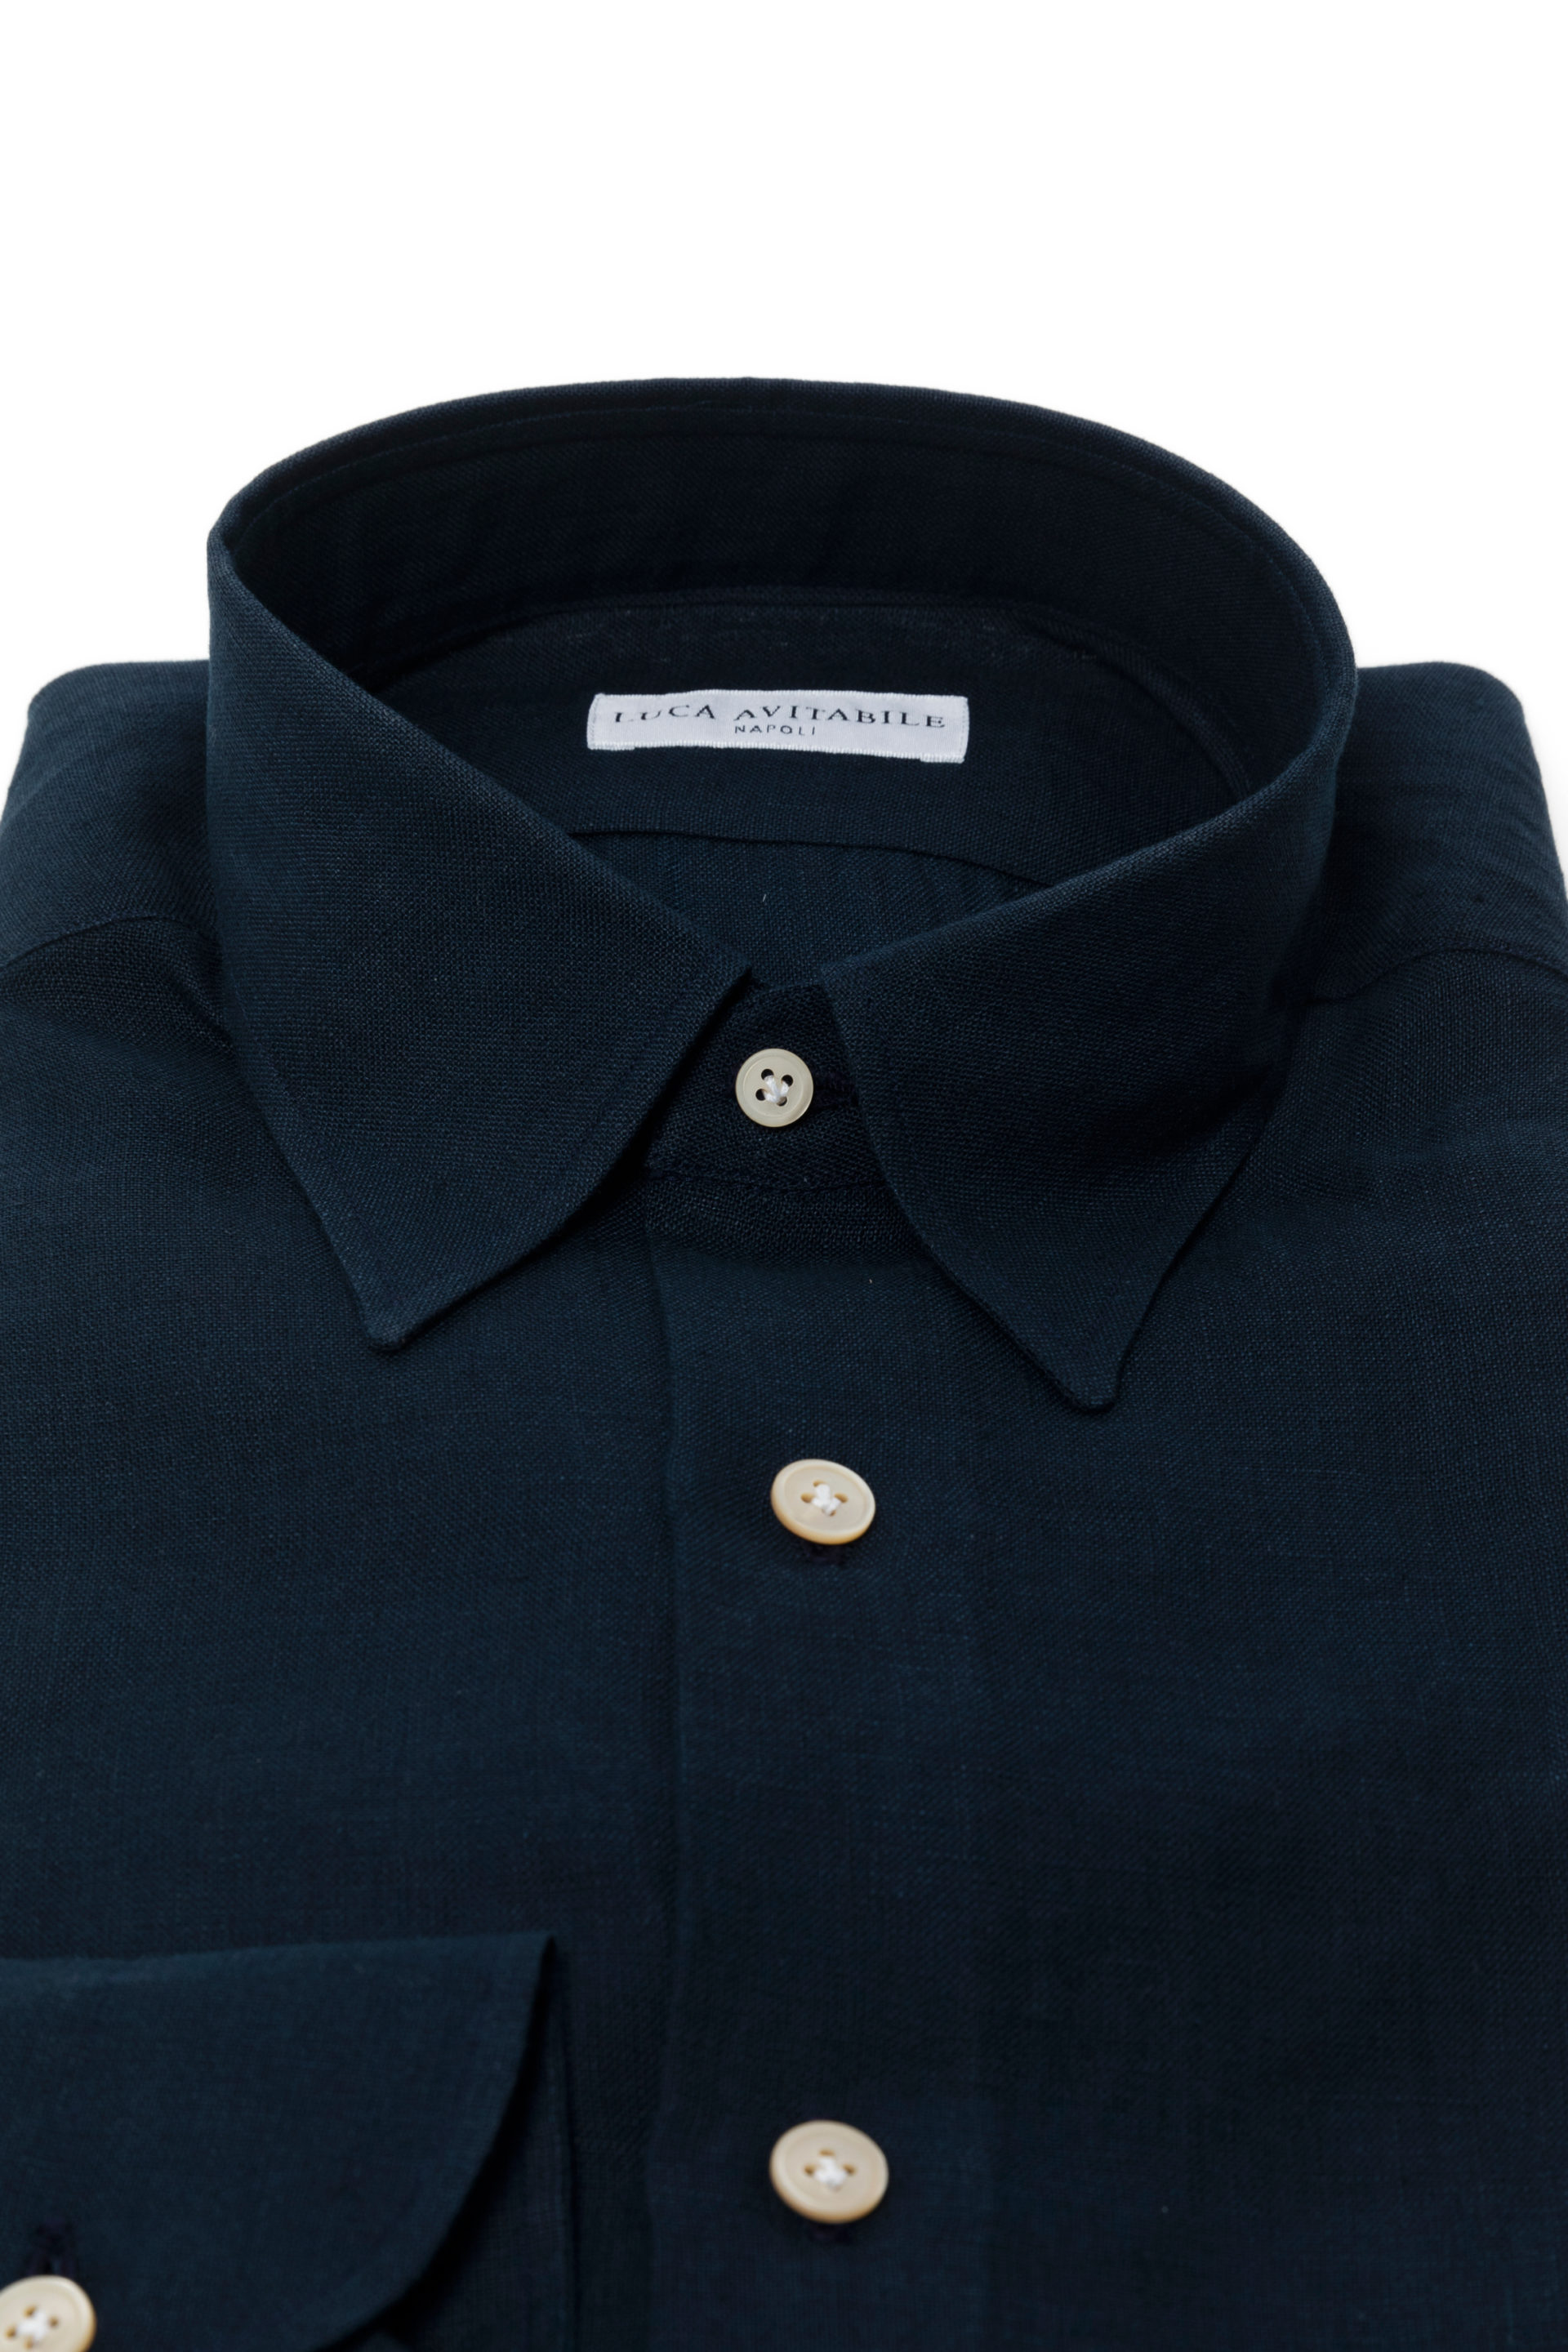 Primavera - Navy Blue Irish Linen Shirt - Luca Avitabile - Handmade Shirt